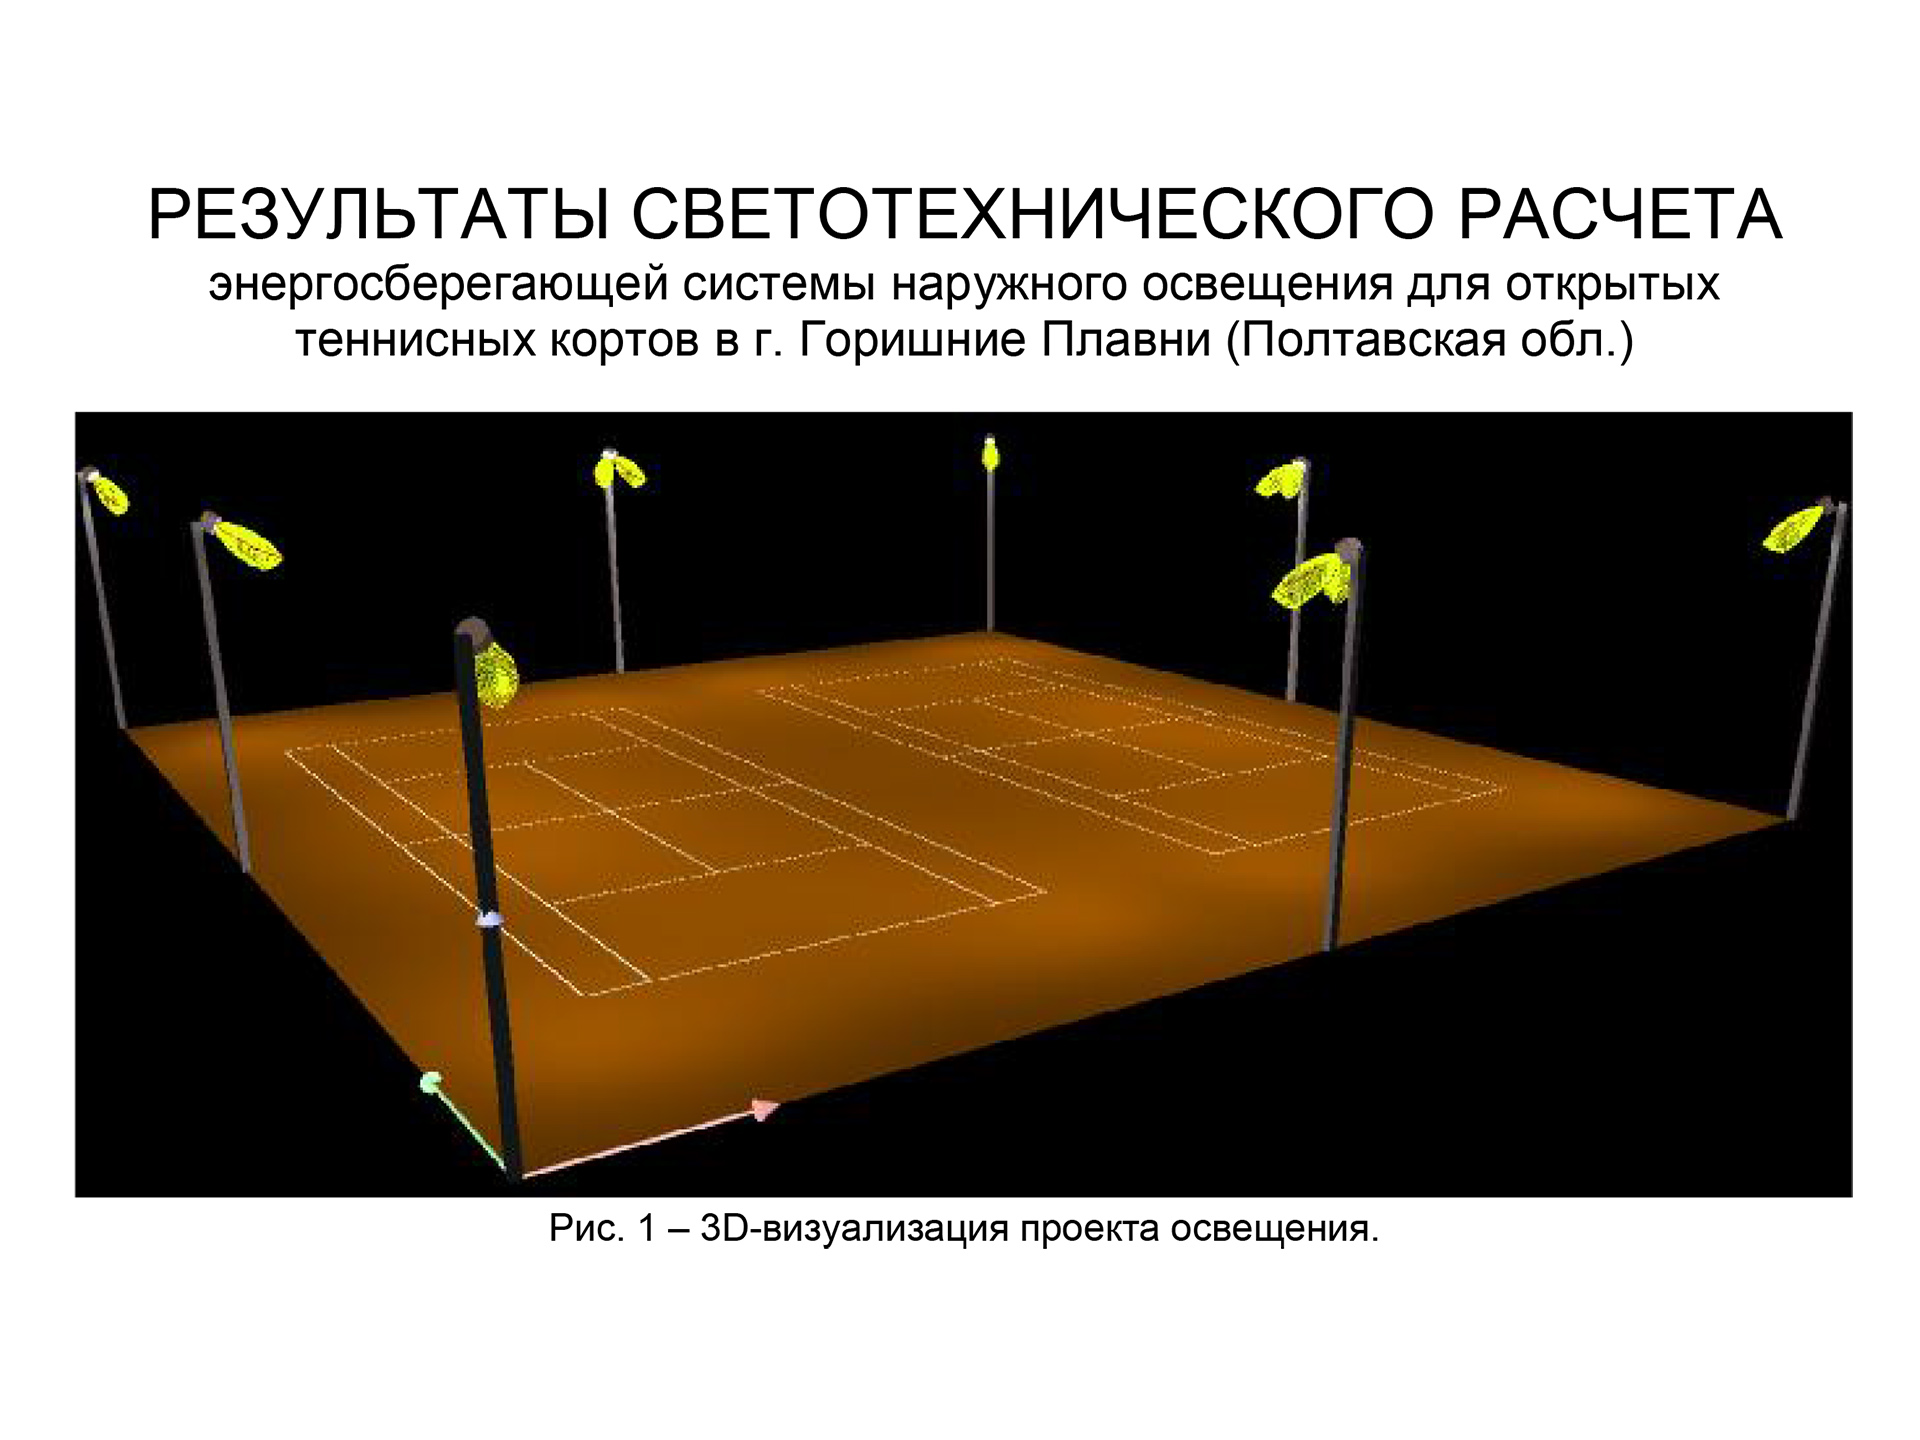 Теннисные корты (г. Горишни Плавни, Полтавской обл.), Фото4